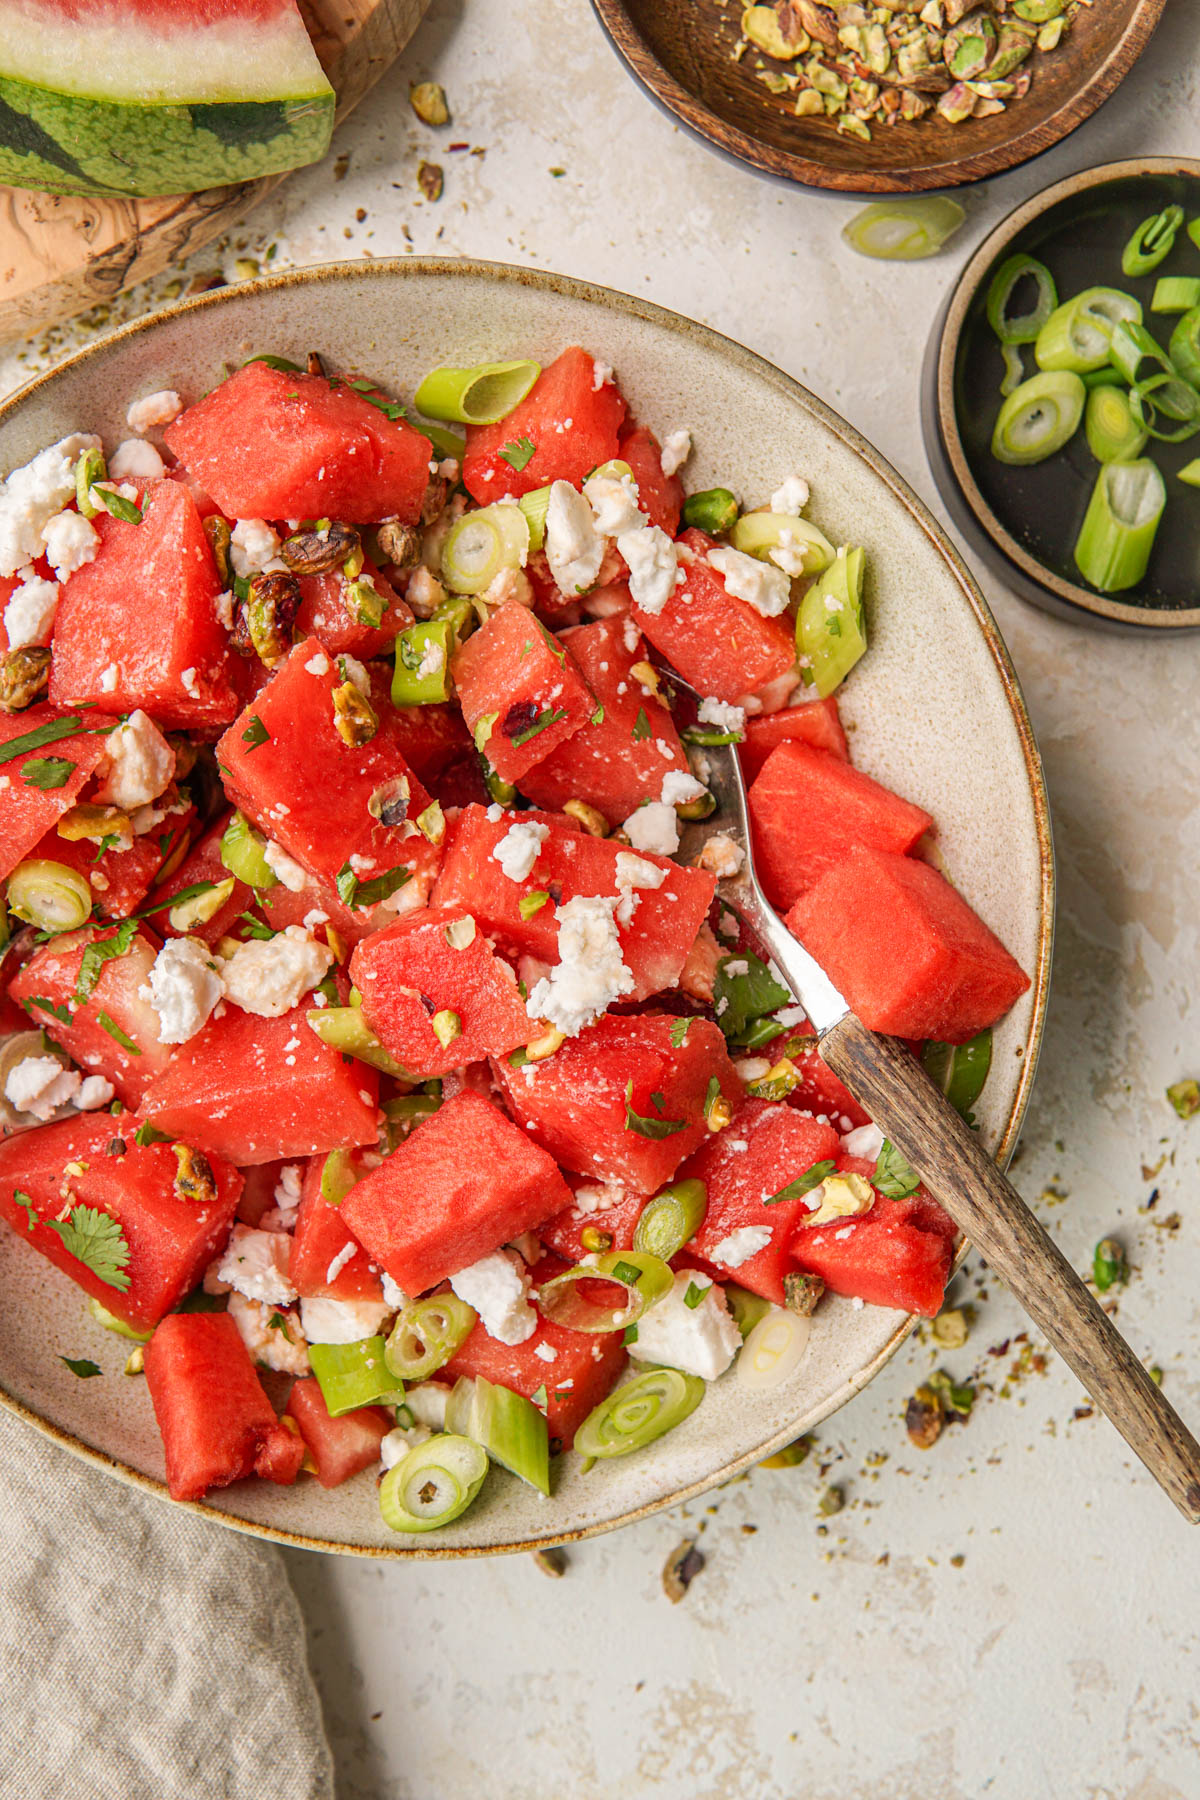 Recept voor watermeloensalade